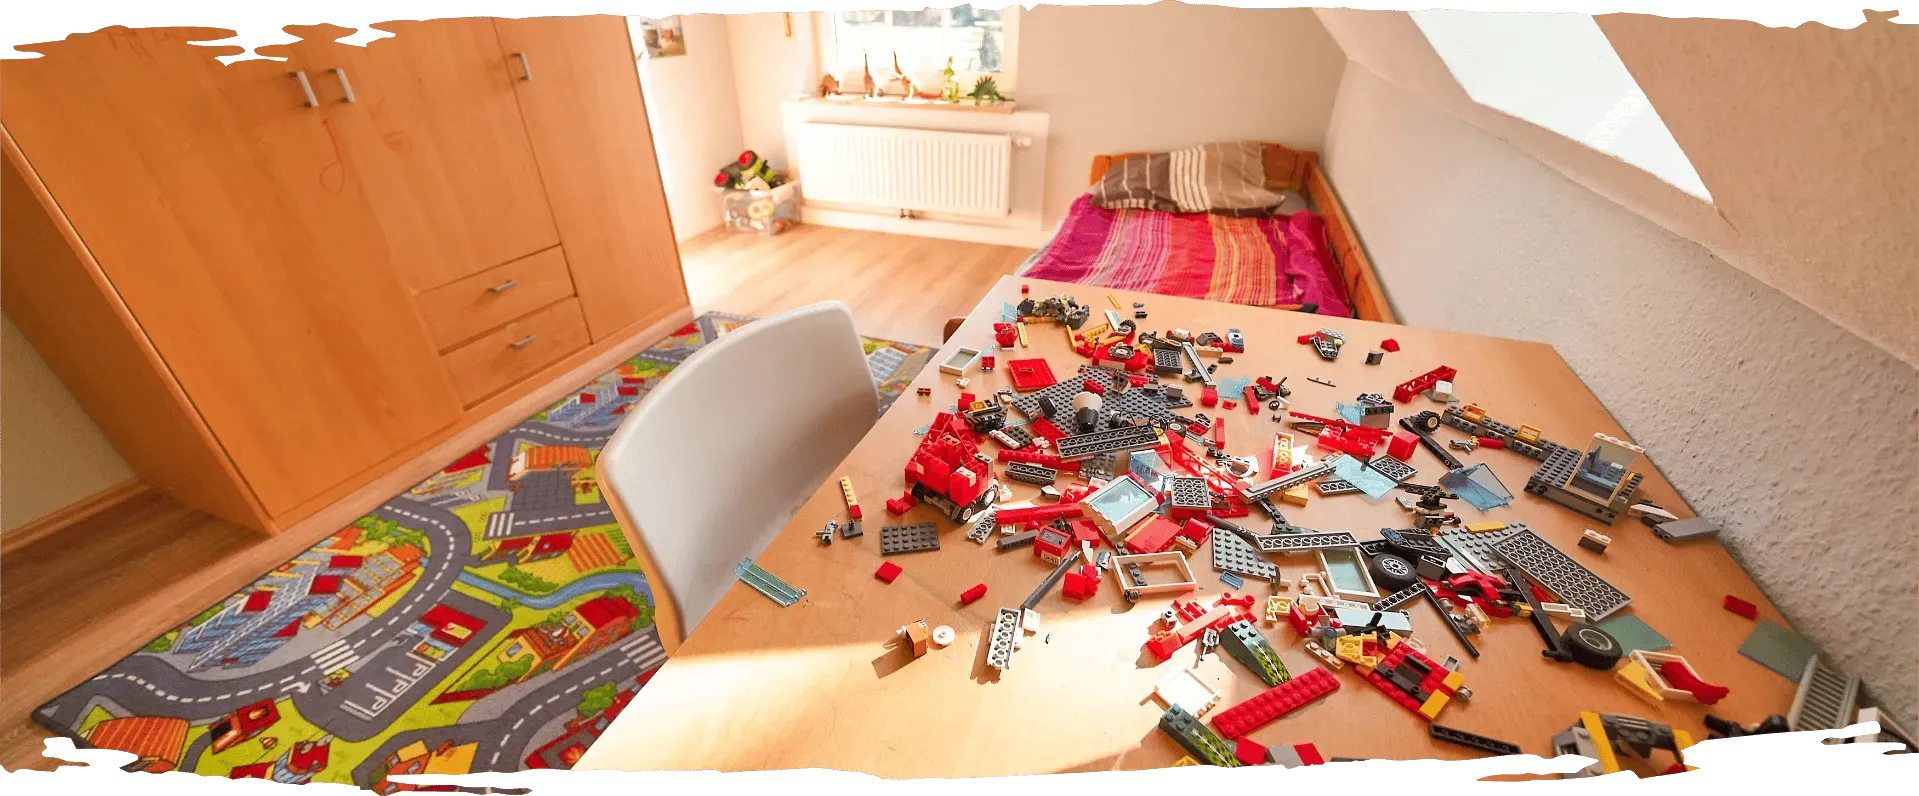 Buntes Kinderzimmer mit verstreuten Legos auf dem Schreibtisch